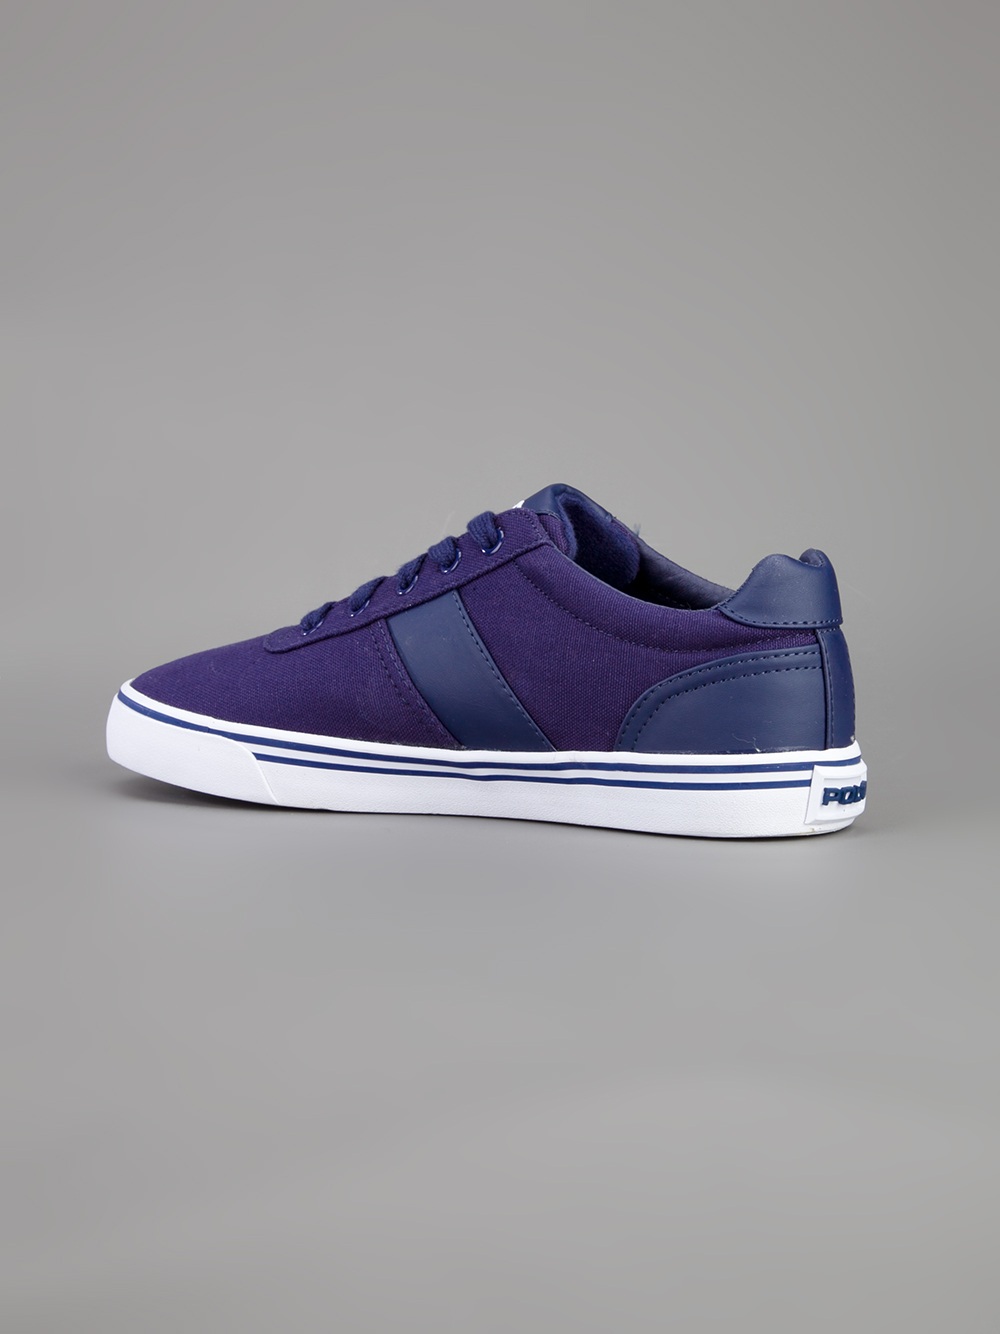 Polo Ralph Lauren Hanford Sneaker in Purple for Men | Lyst